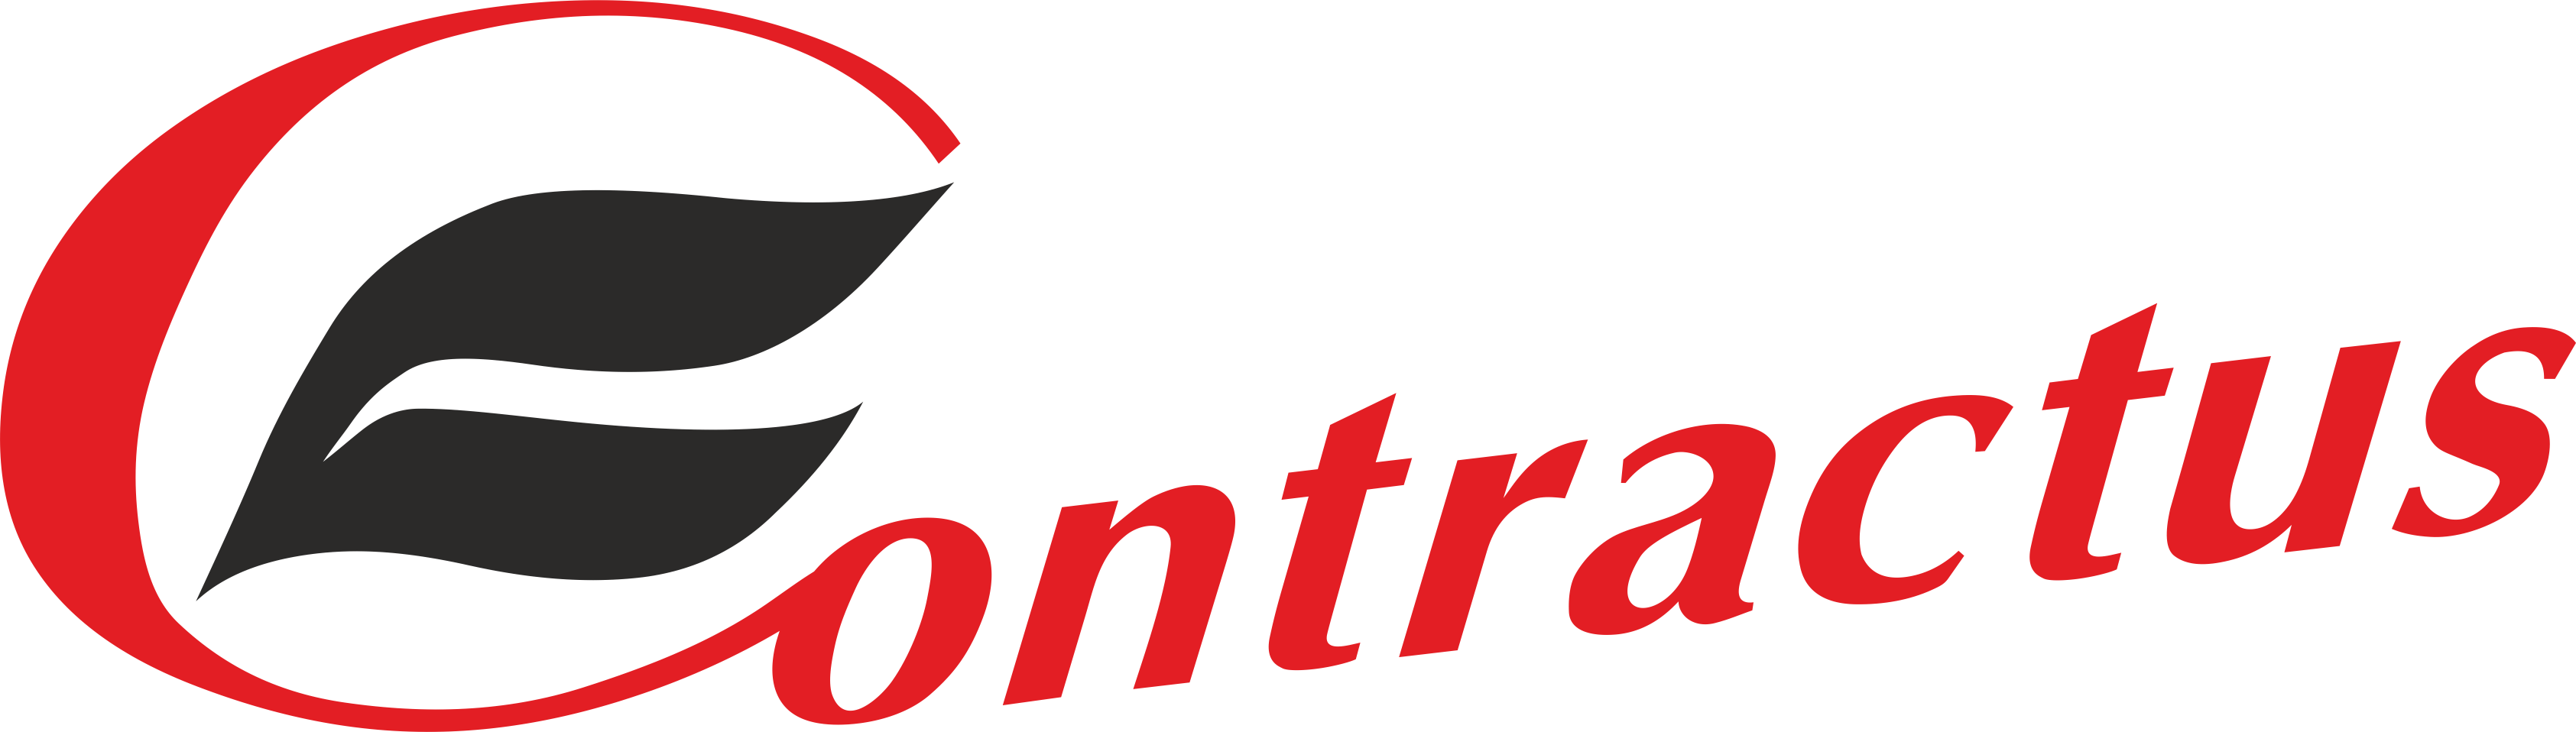 logo contractus